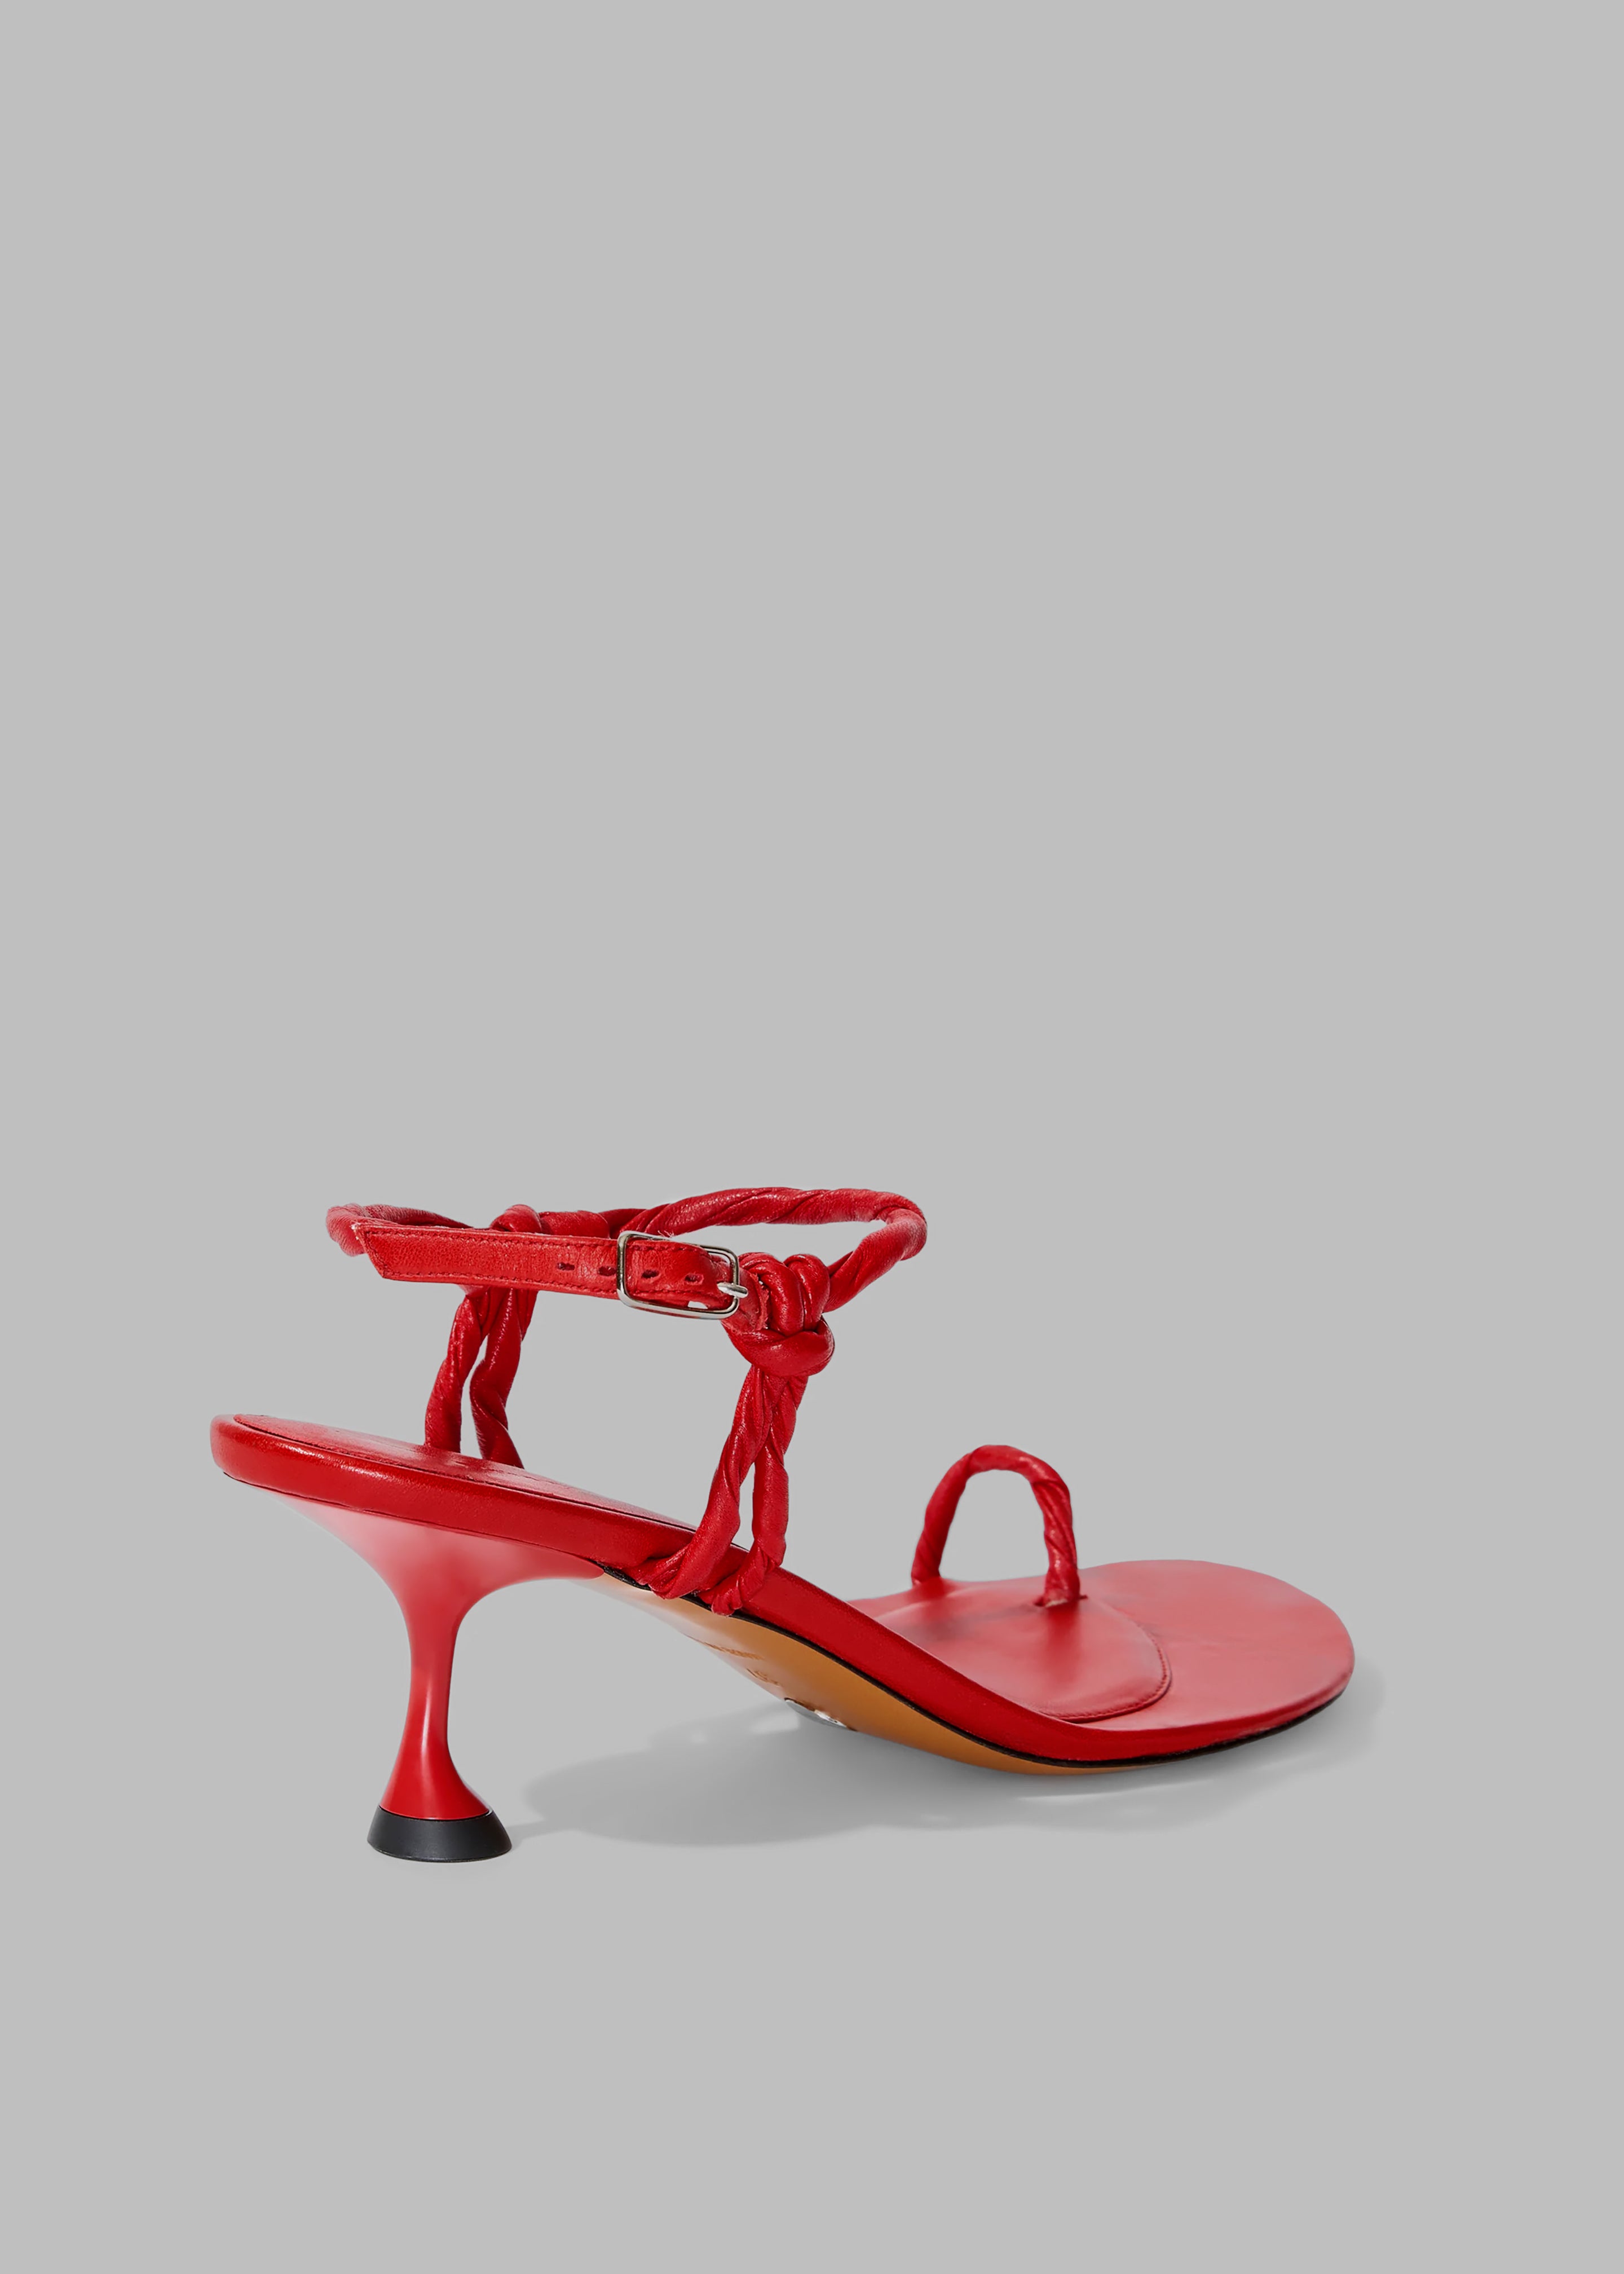 Proenza Schouler Tee Toe Ring Sandals - Red - 9